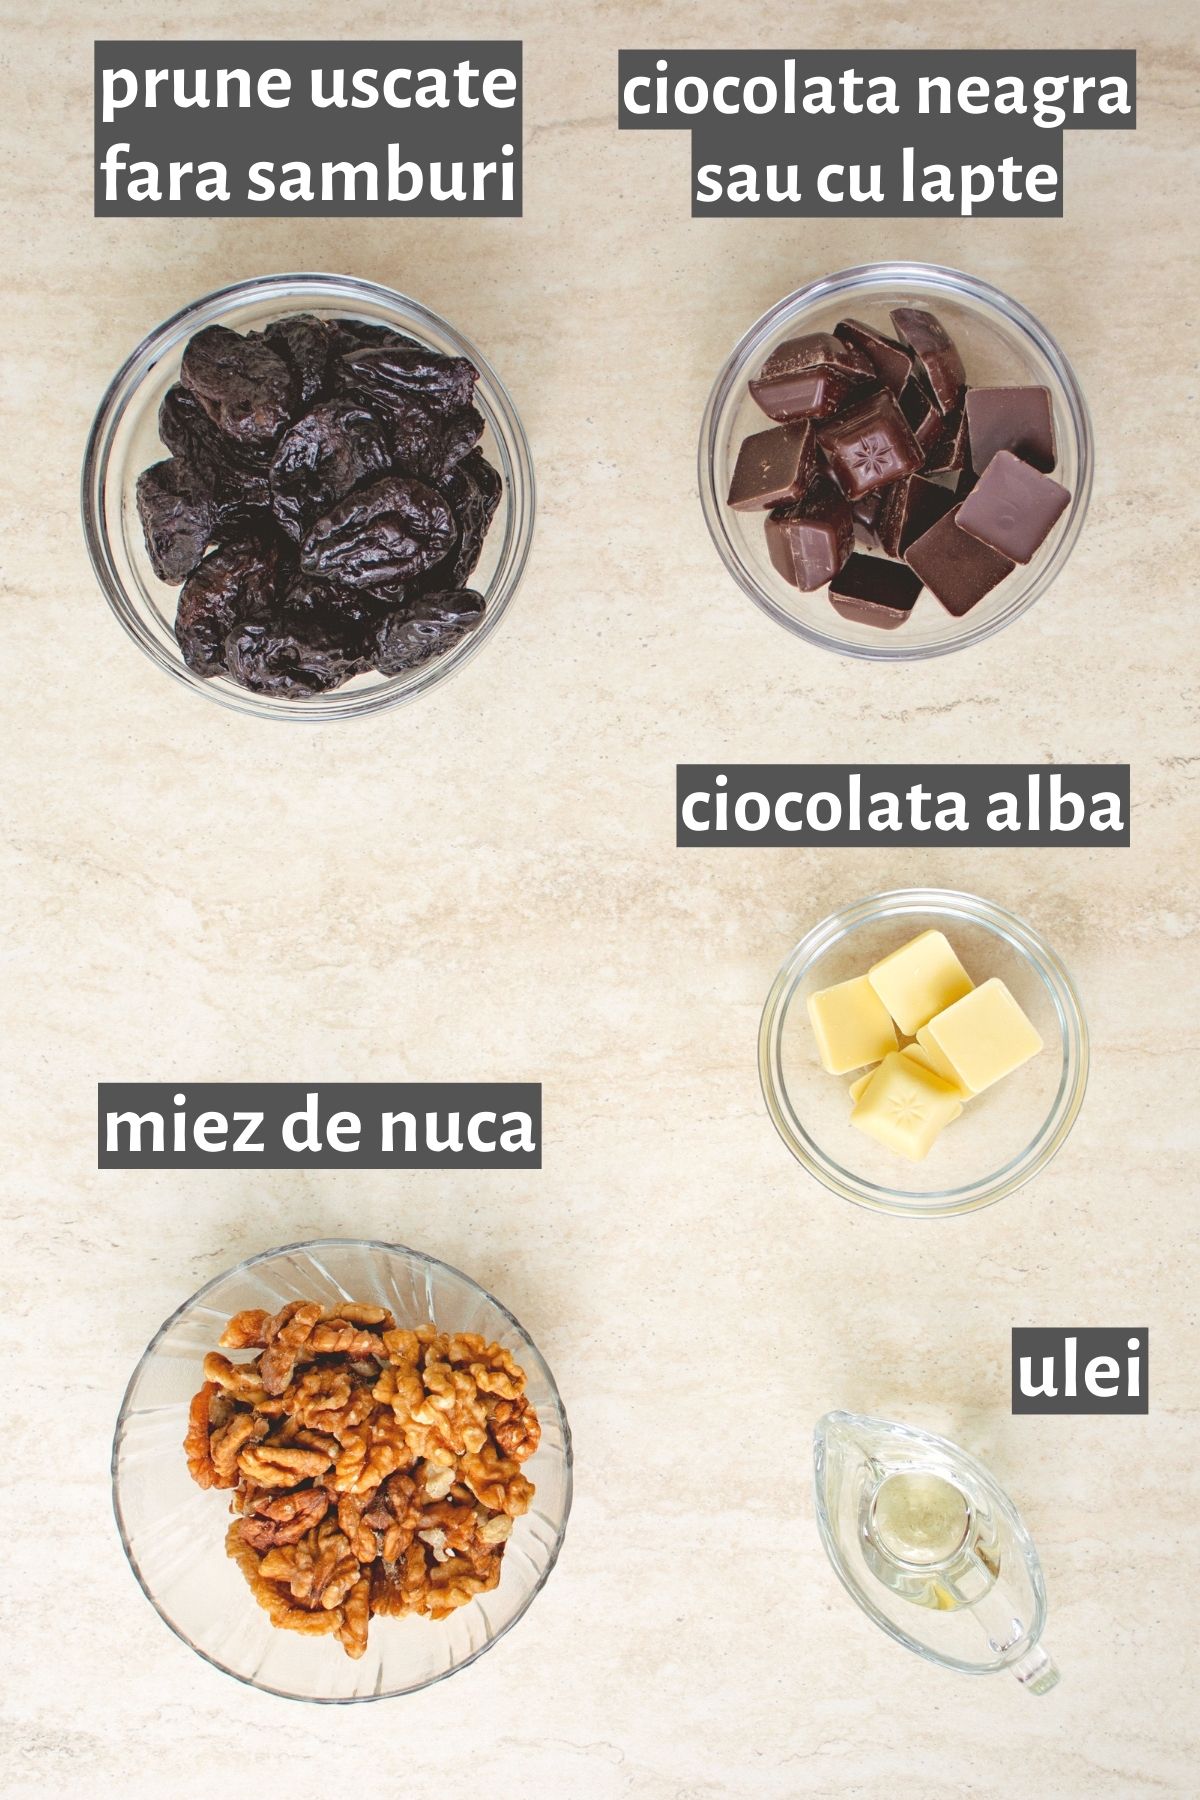 ingrediente reteta bomboane cu prune uscate in ciocolata